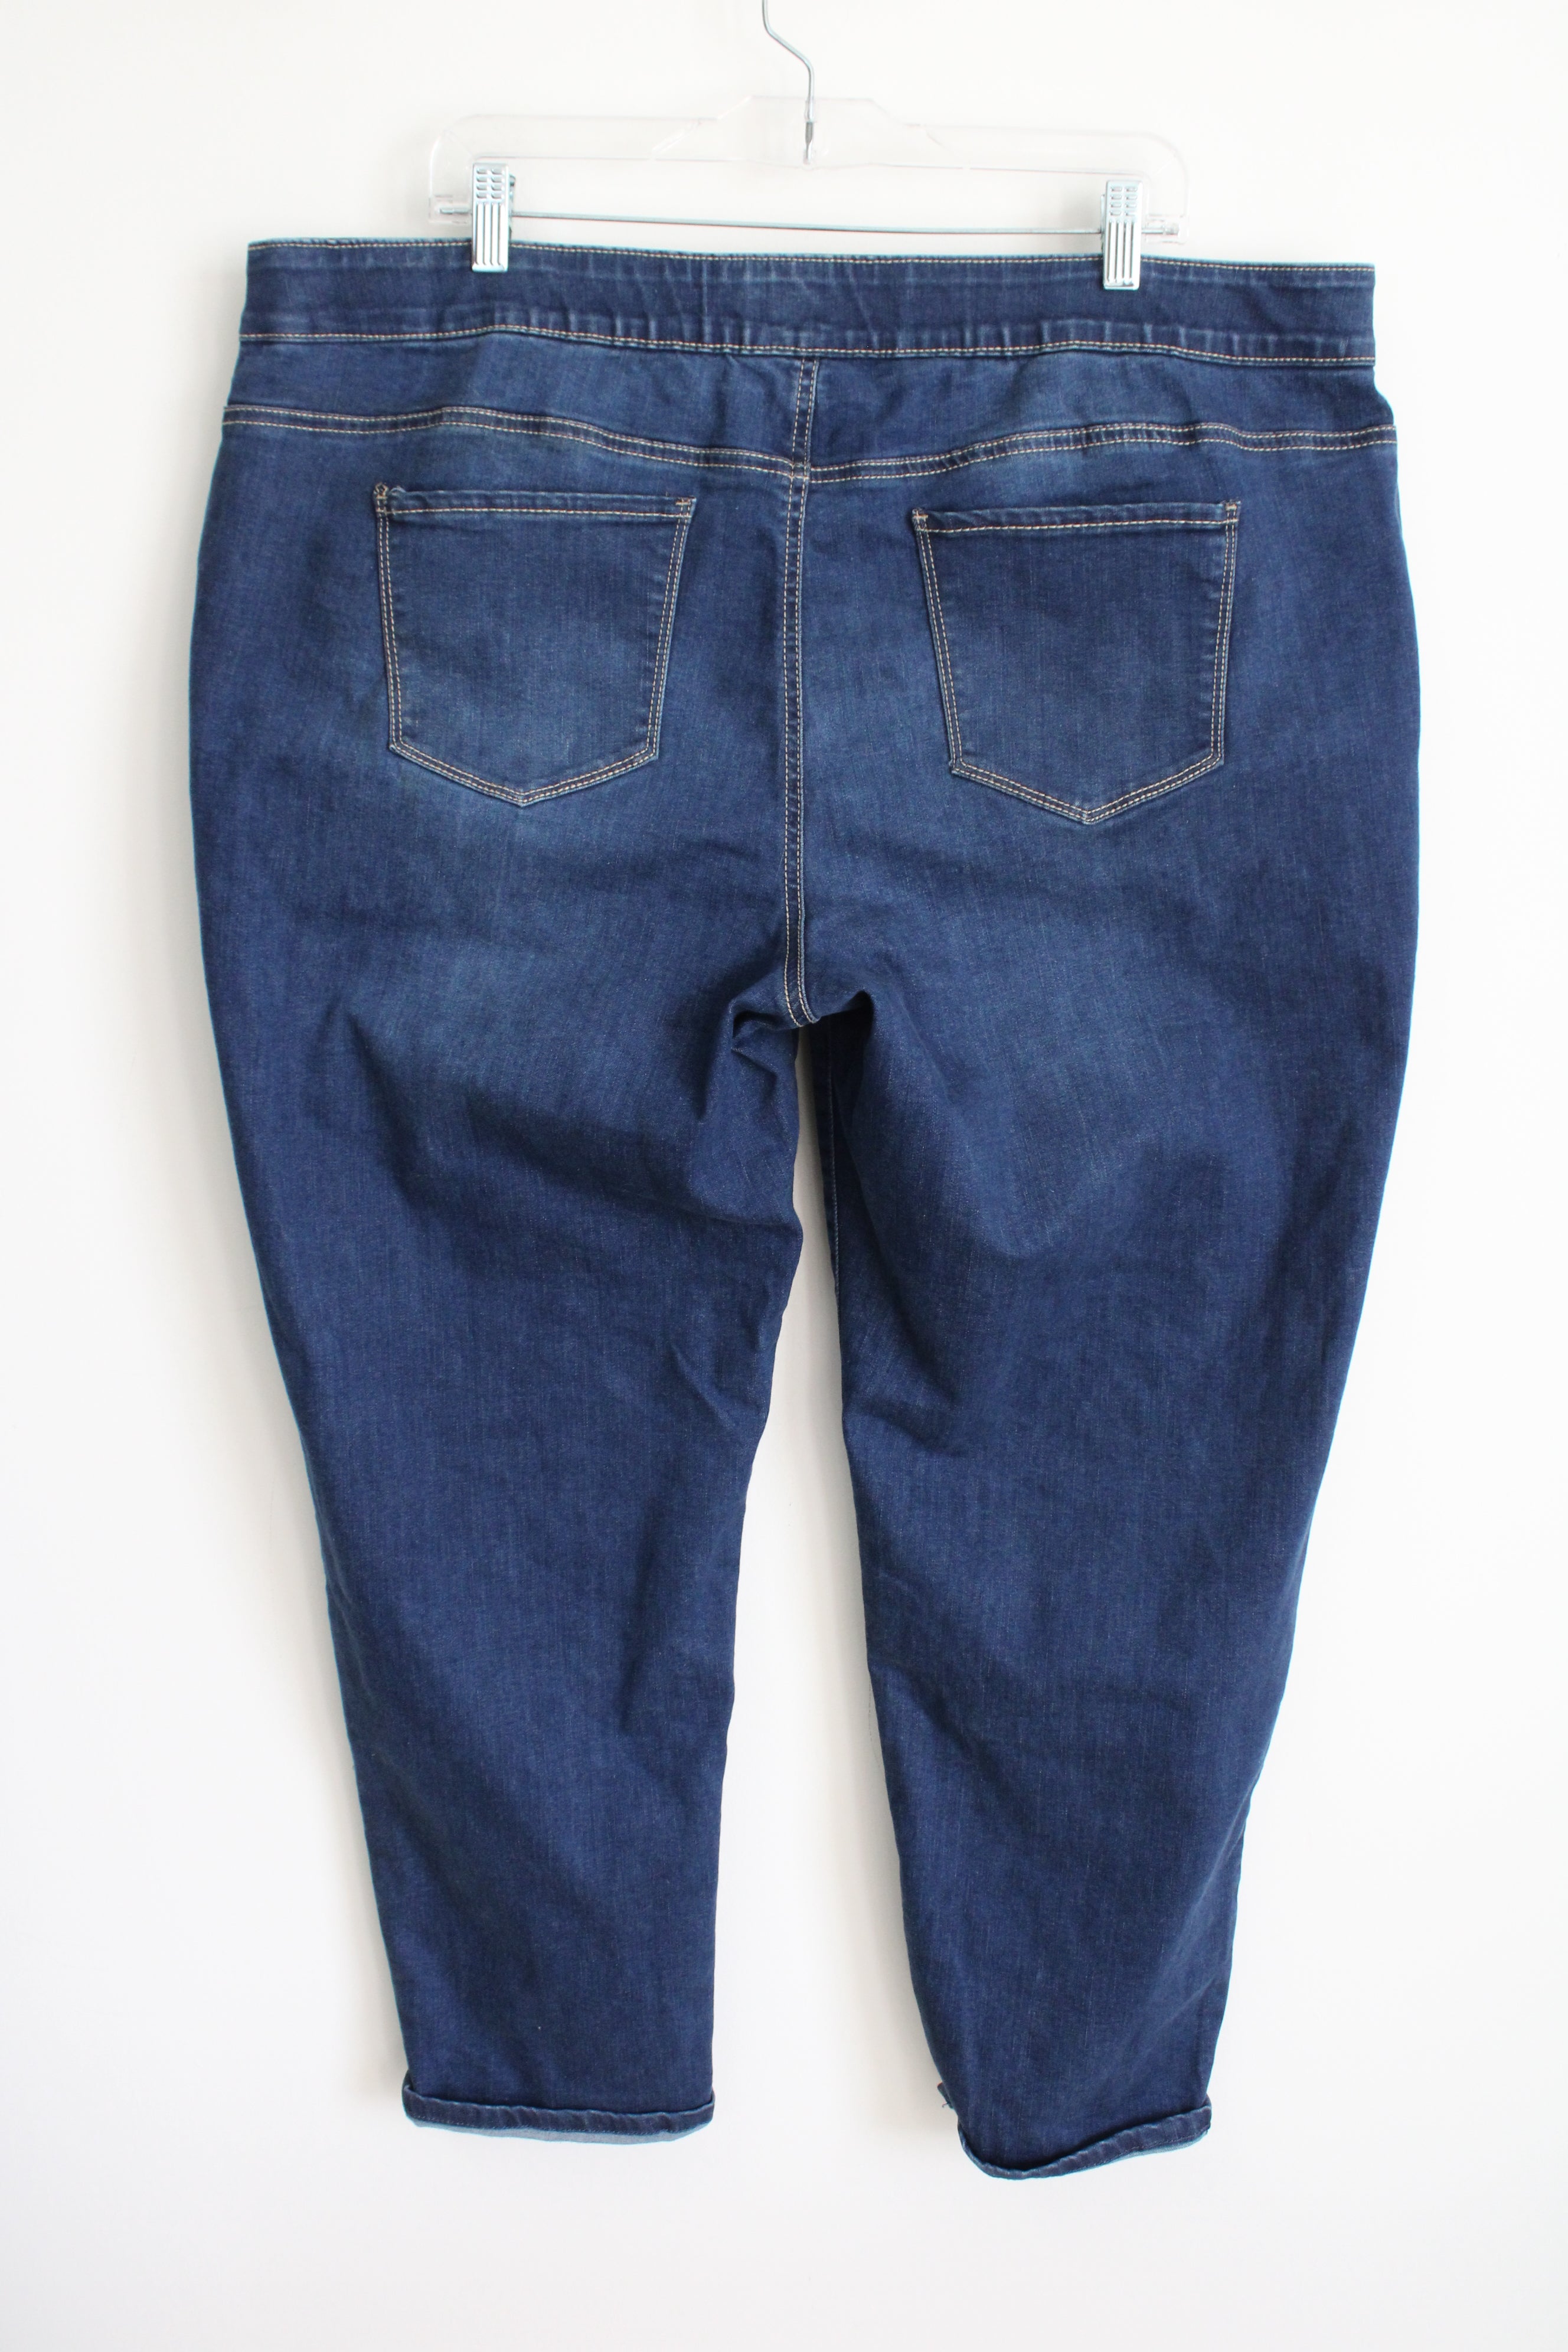 Croft & Barrow Jeans | 20W